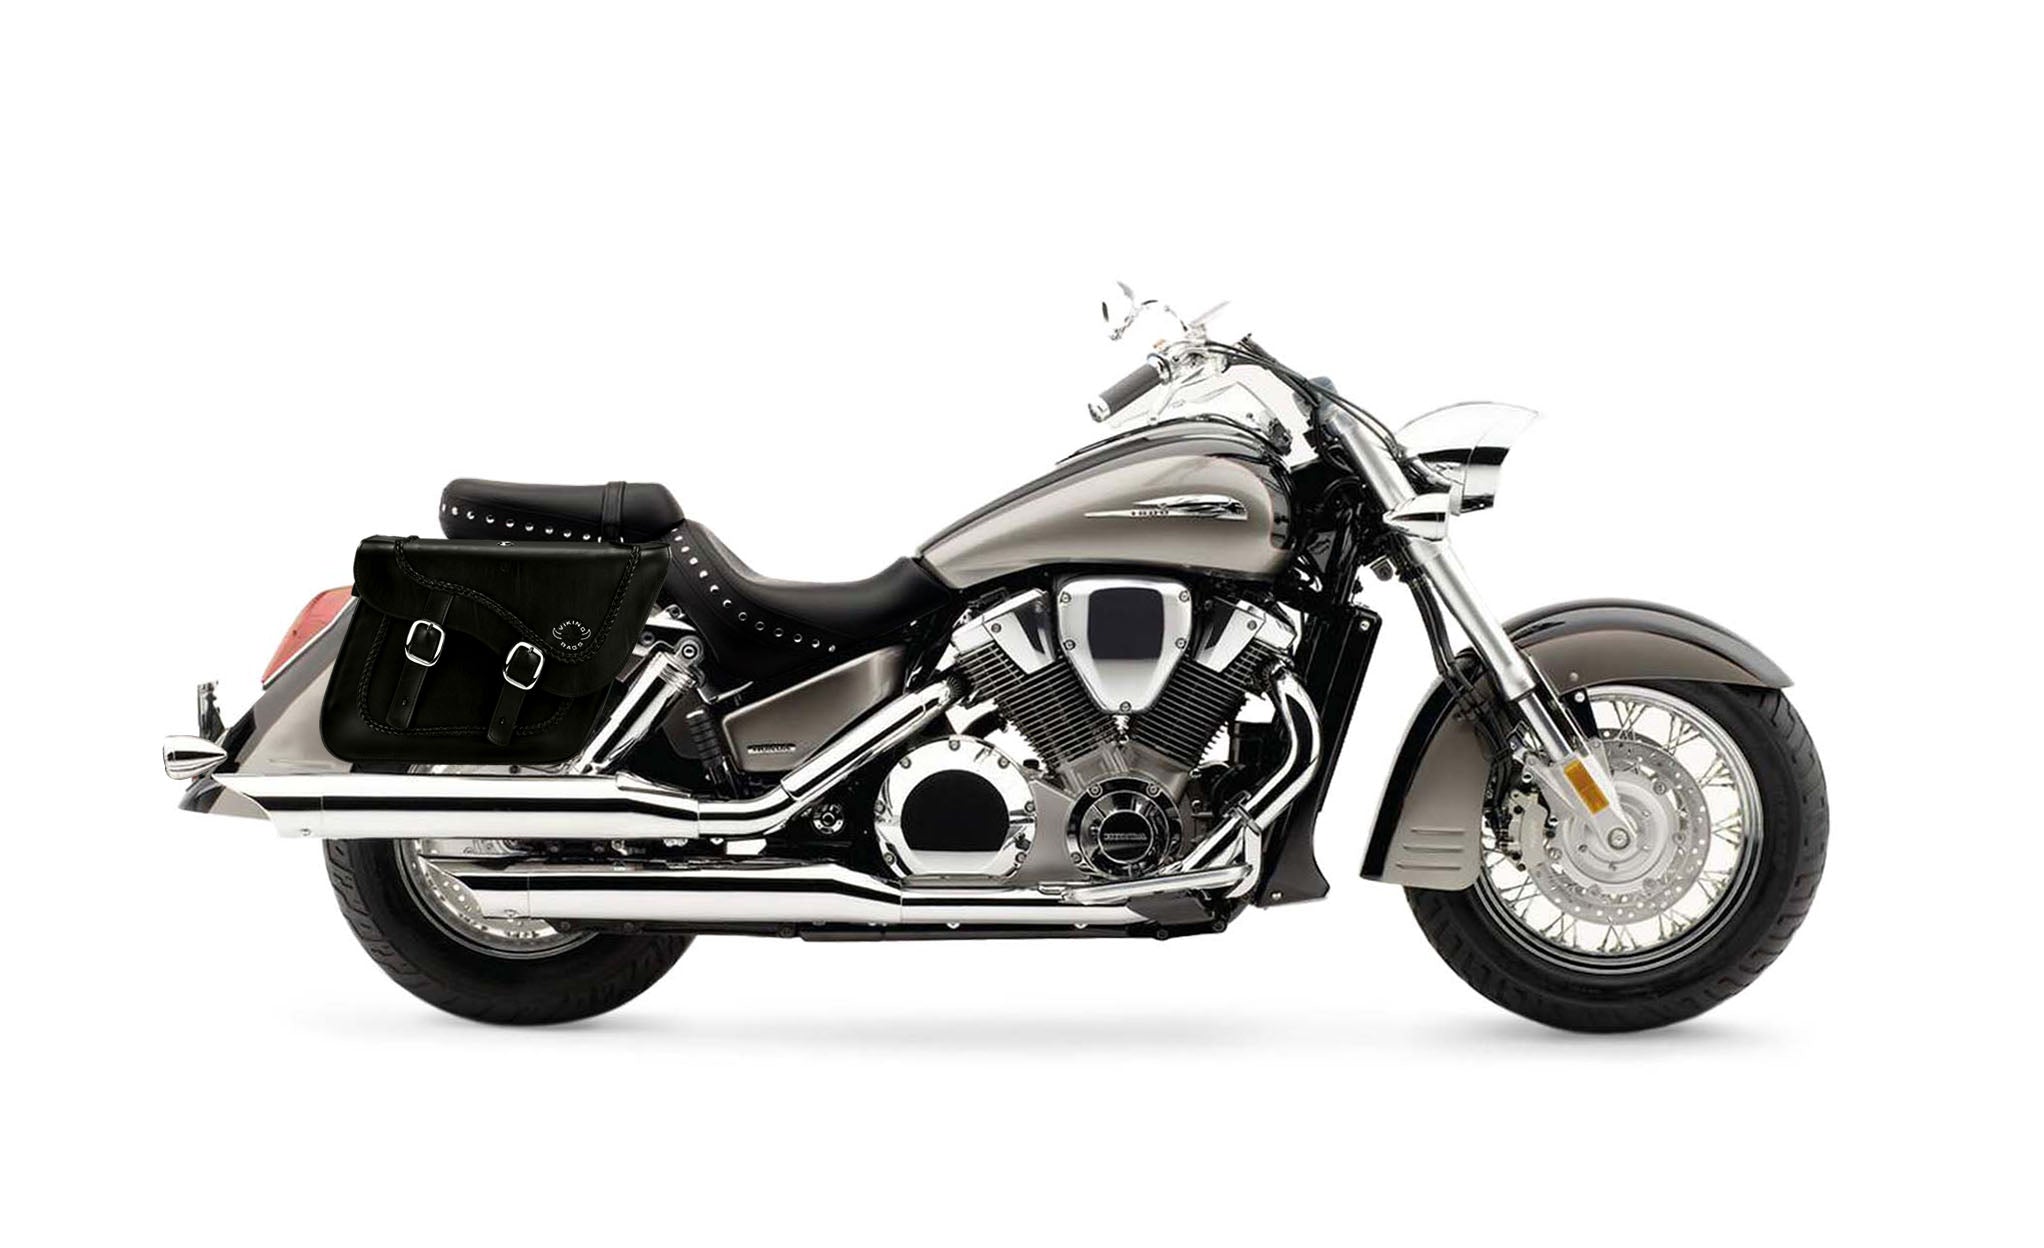 Viking Americano Honda Vtx 1800 S Braided Large Leather Motorcycle Saddlebags on Bike Photo @expand